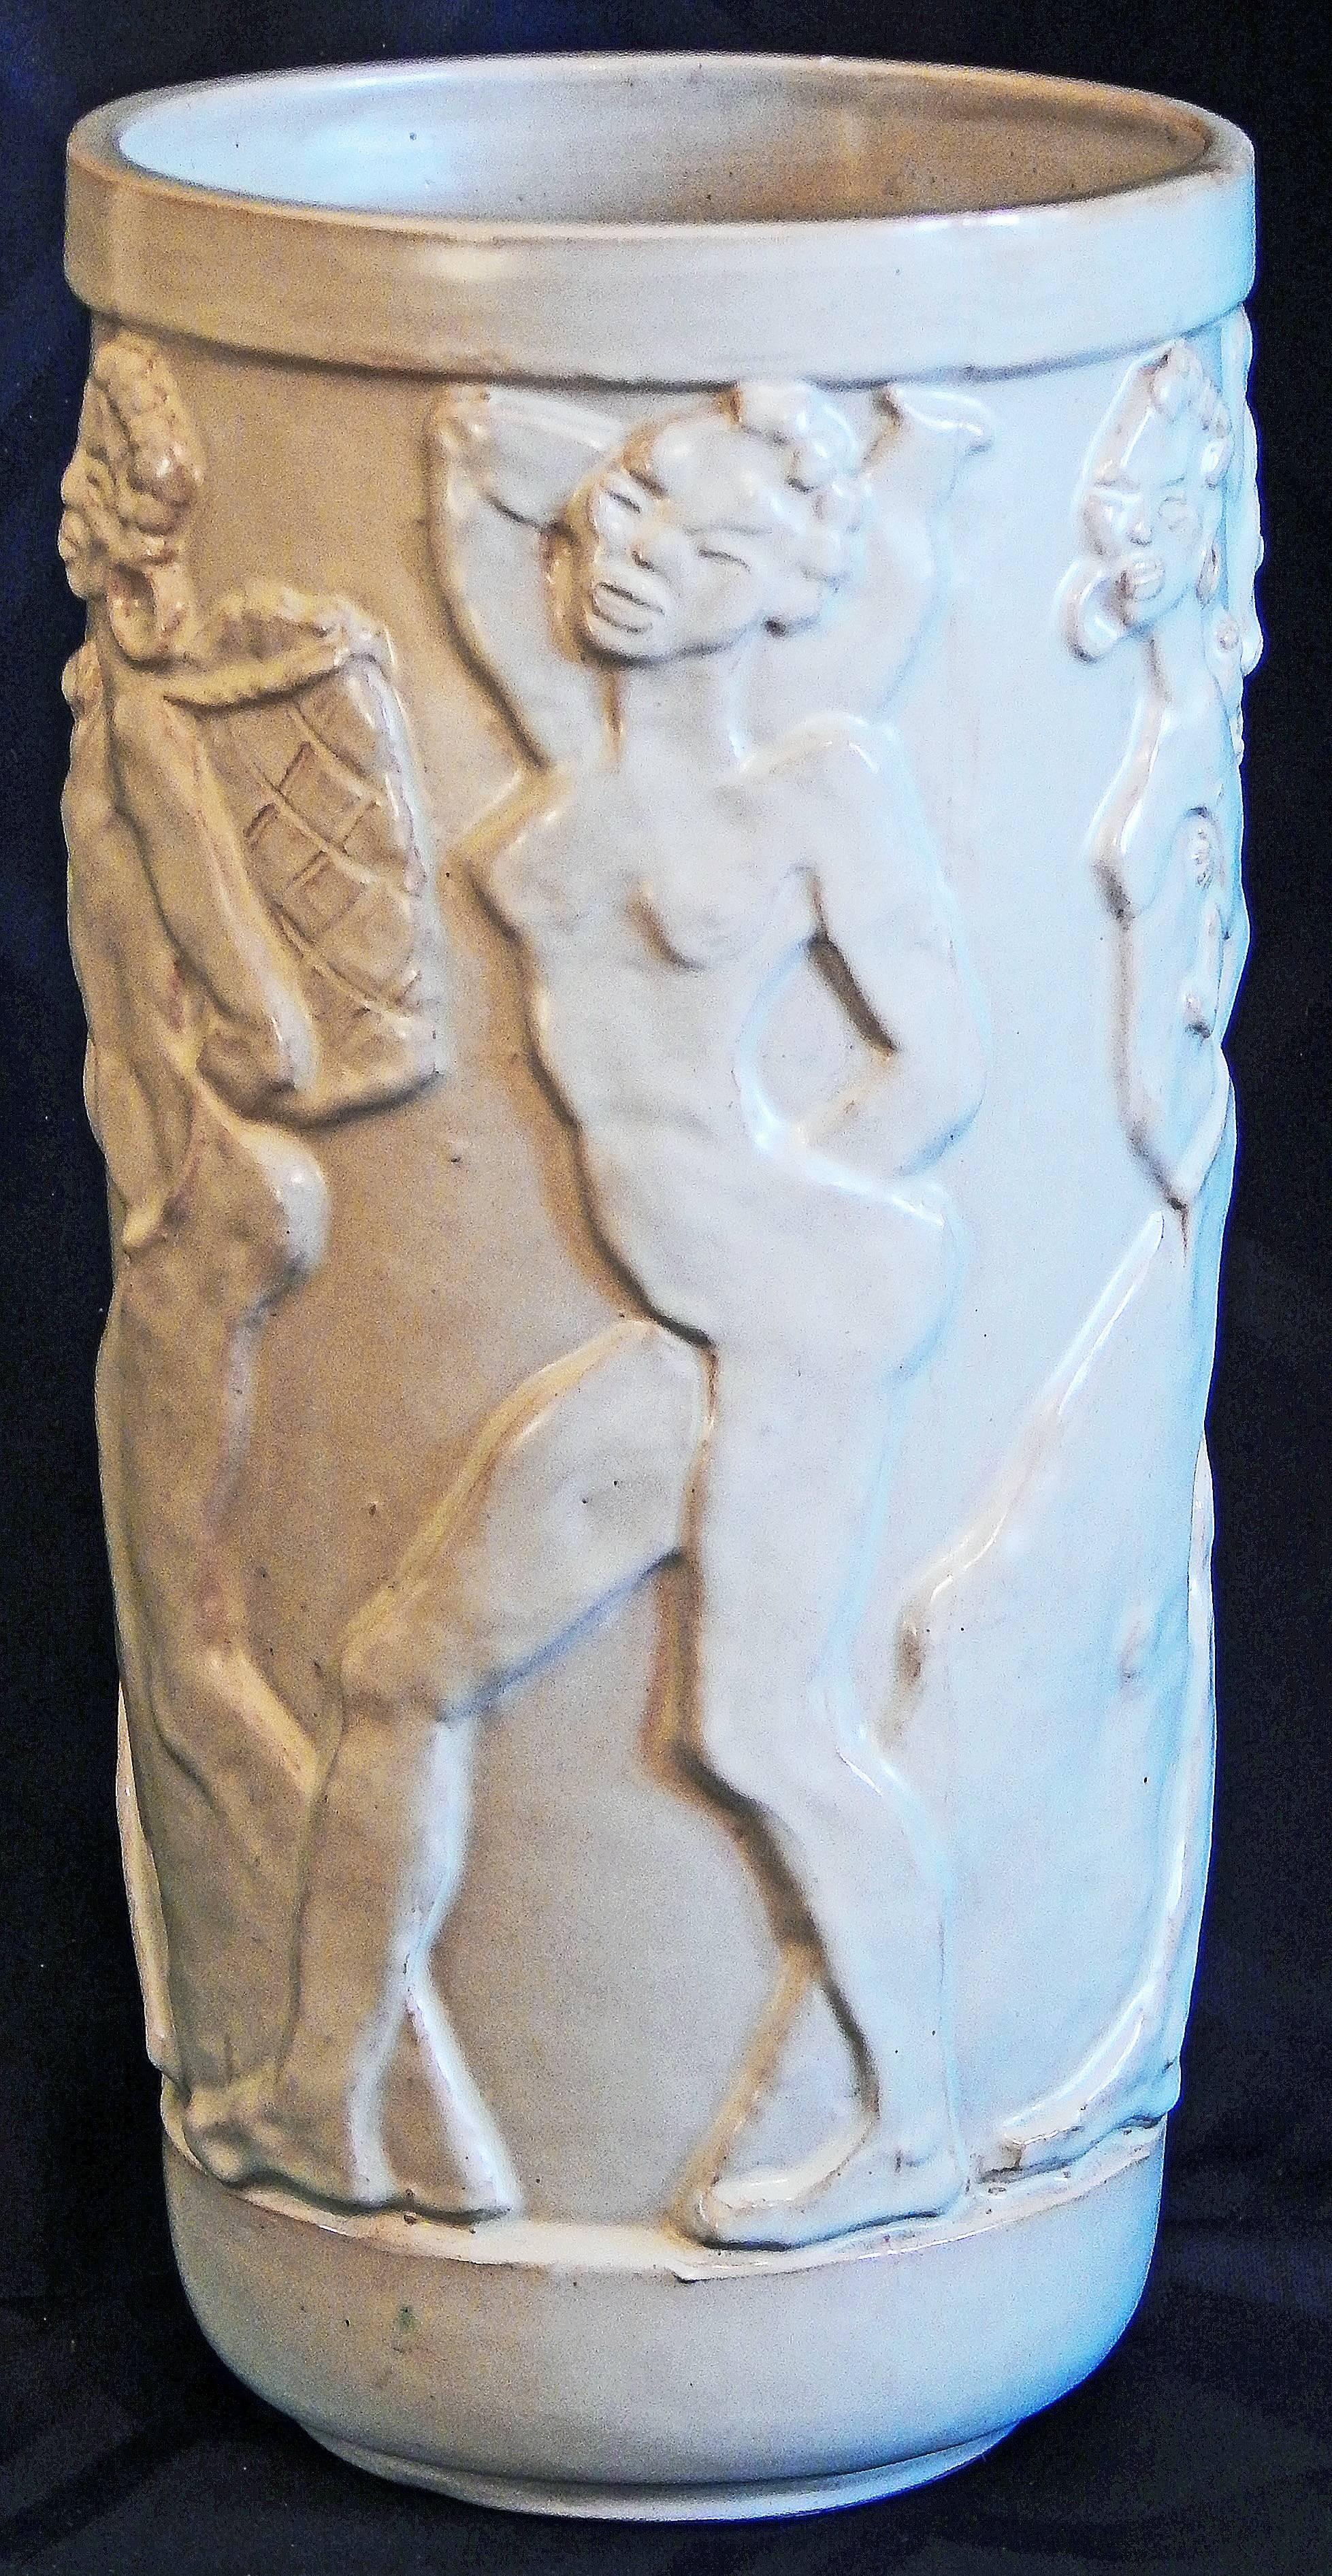 Vase en bas-relief exceptionnel, sculpté par Allan Ebeling pour Steninge Keramik en Suède, cette pièce représente une procession de six femmes africaines nues portant diverses choses (bébé, poisson, etc.), disposées comme sur une frise. Chaque